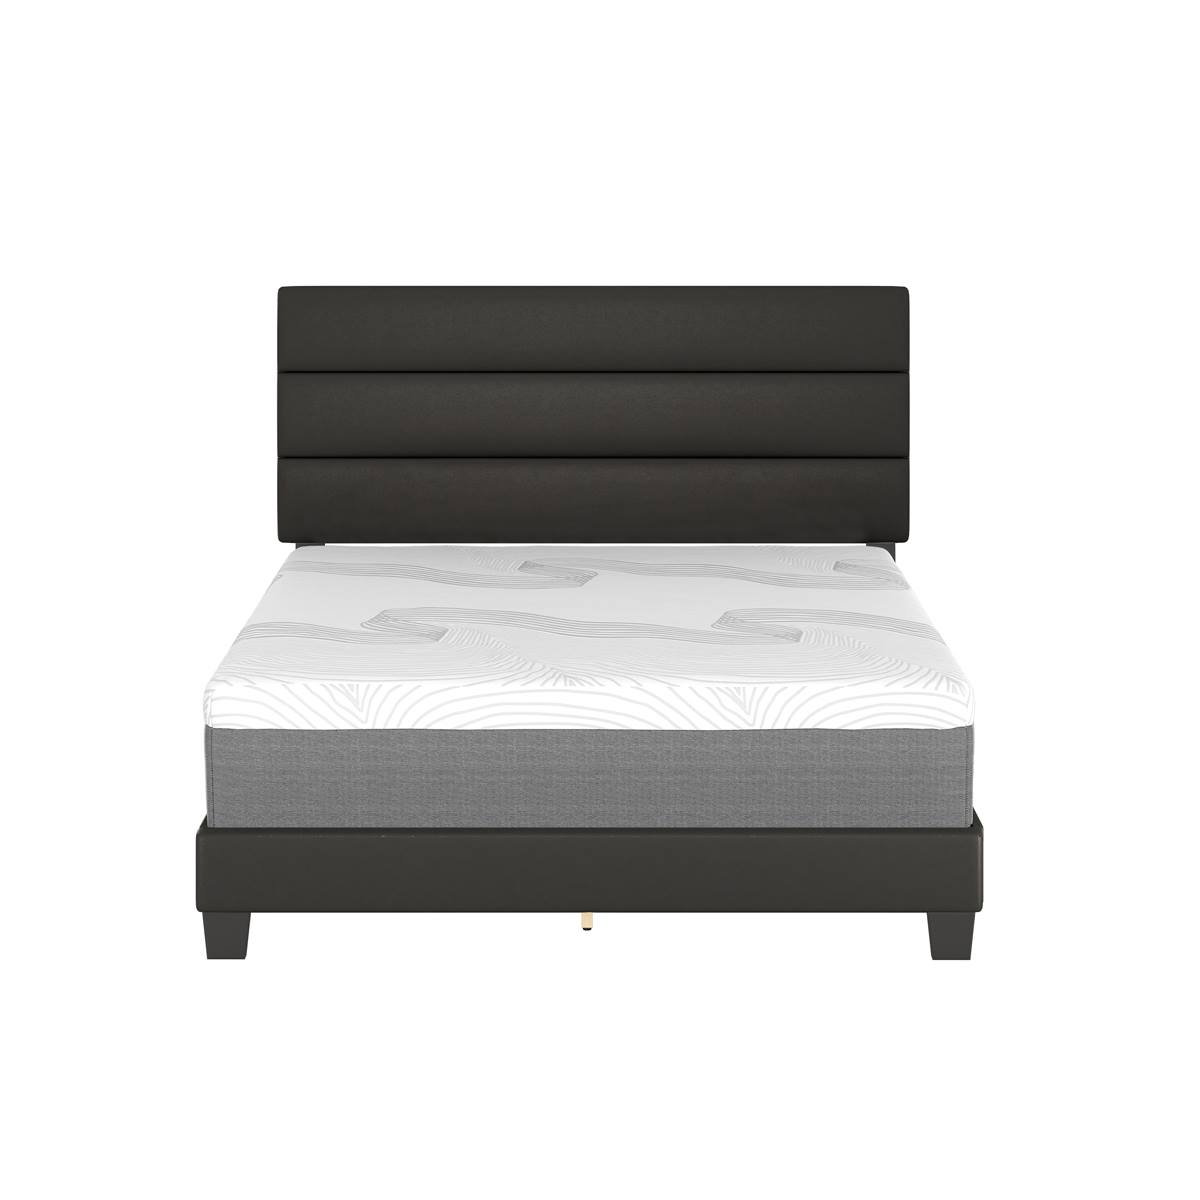 Boyd Sleep Grand Elegance Prestyn Upholstered Platform Bed Frame